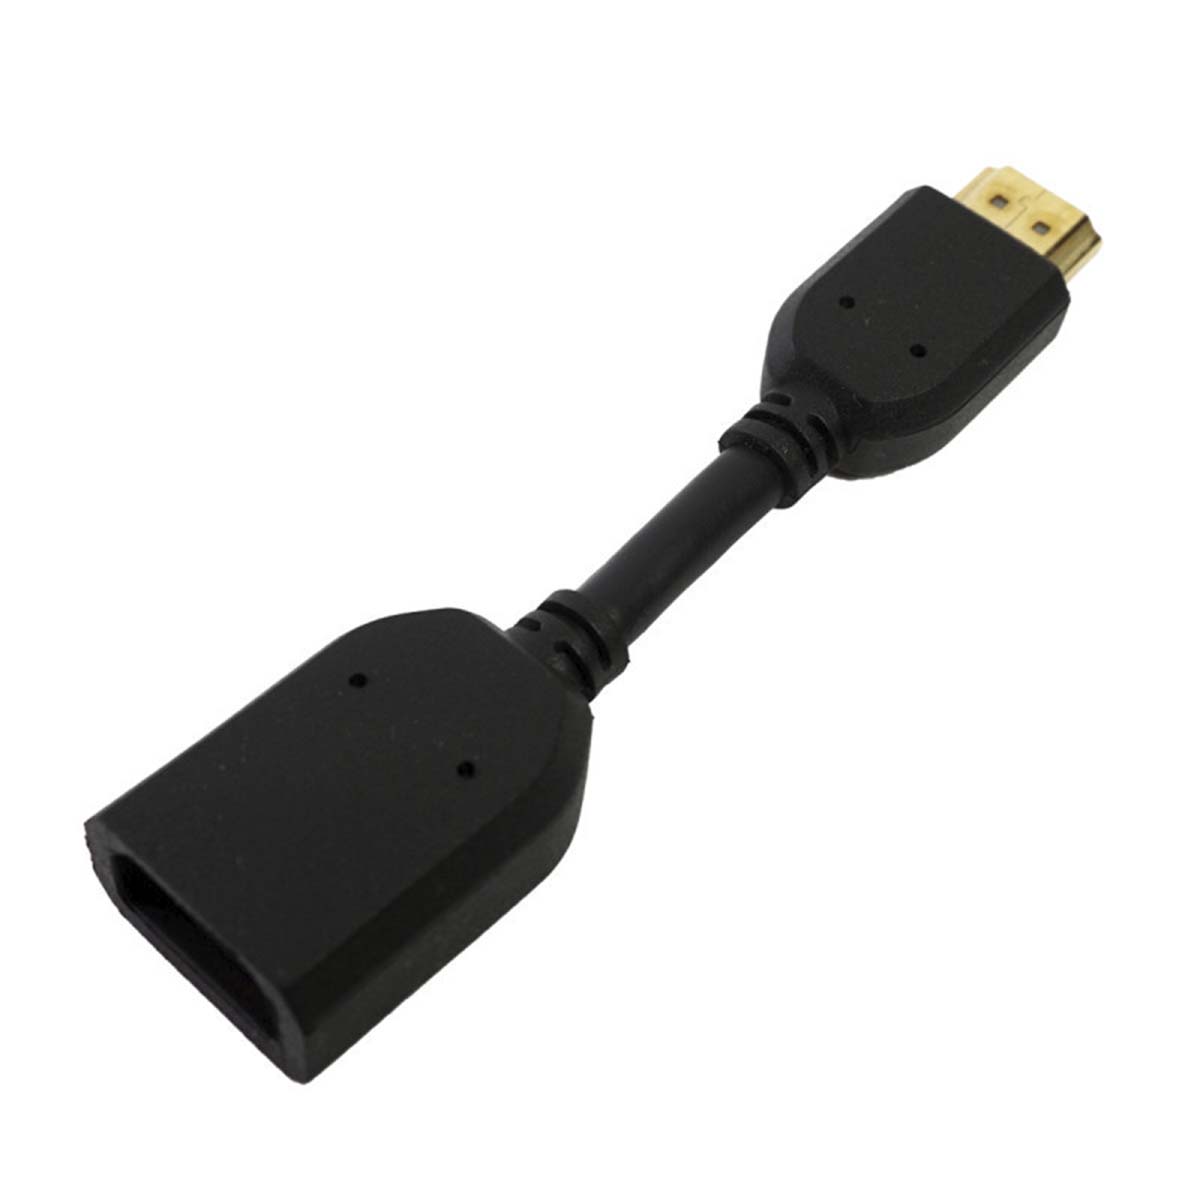 Переходник HDMI F - M, длина 10см, цвет черный